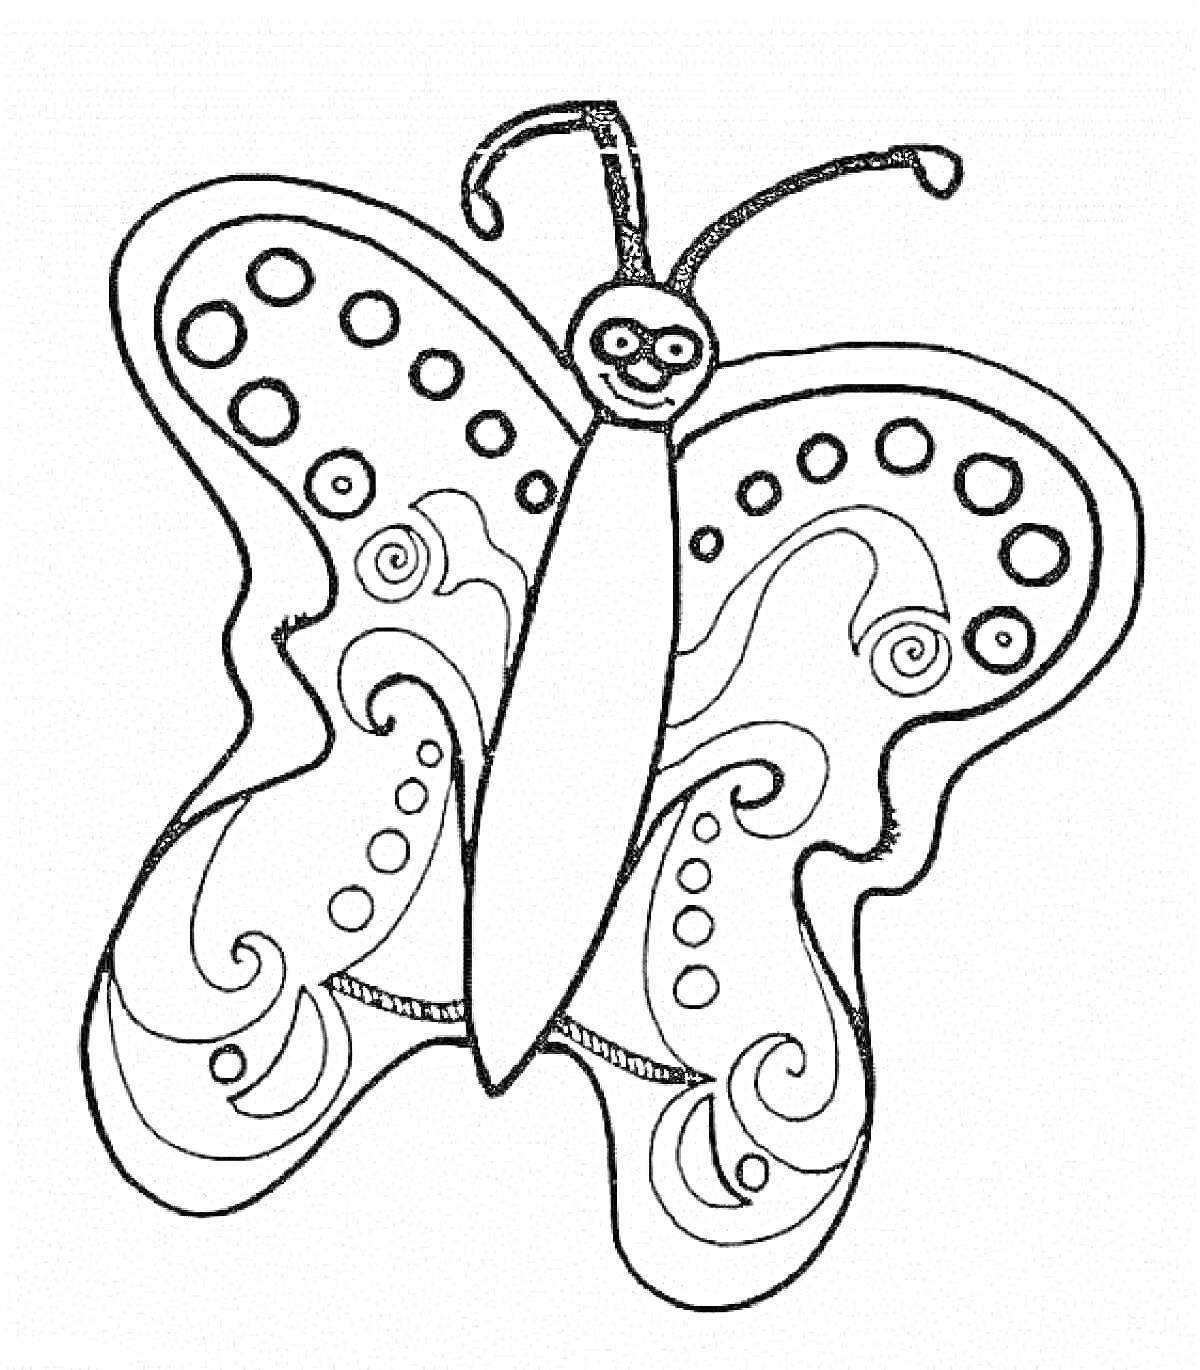 Раскраска Бабочка с узорами на крыльях и улыбающимся лицом